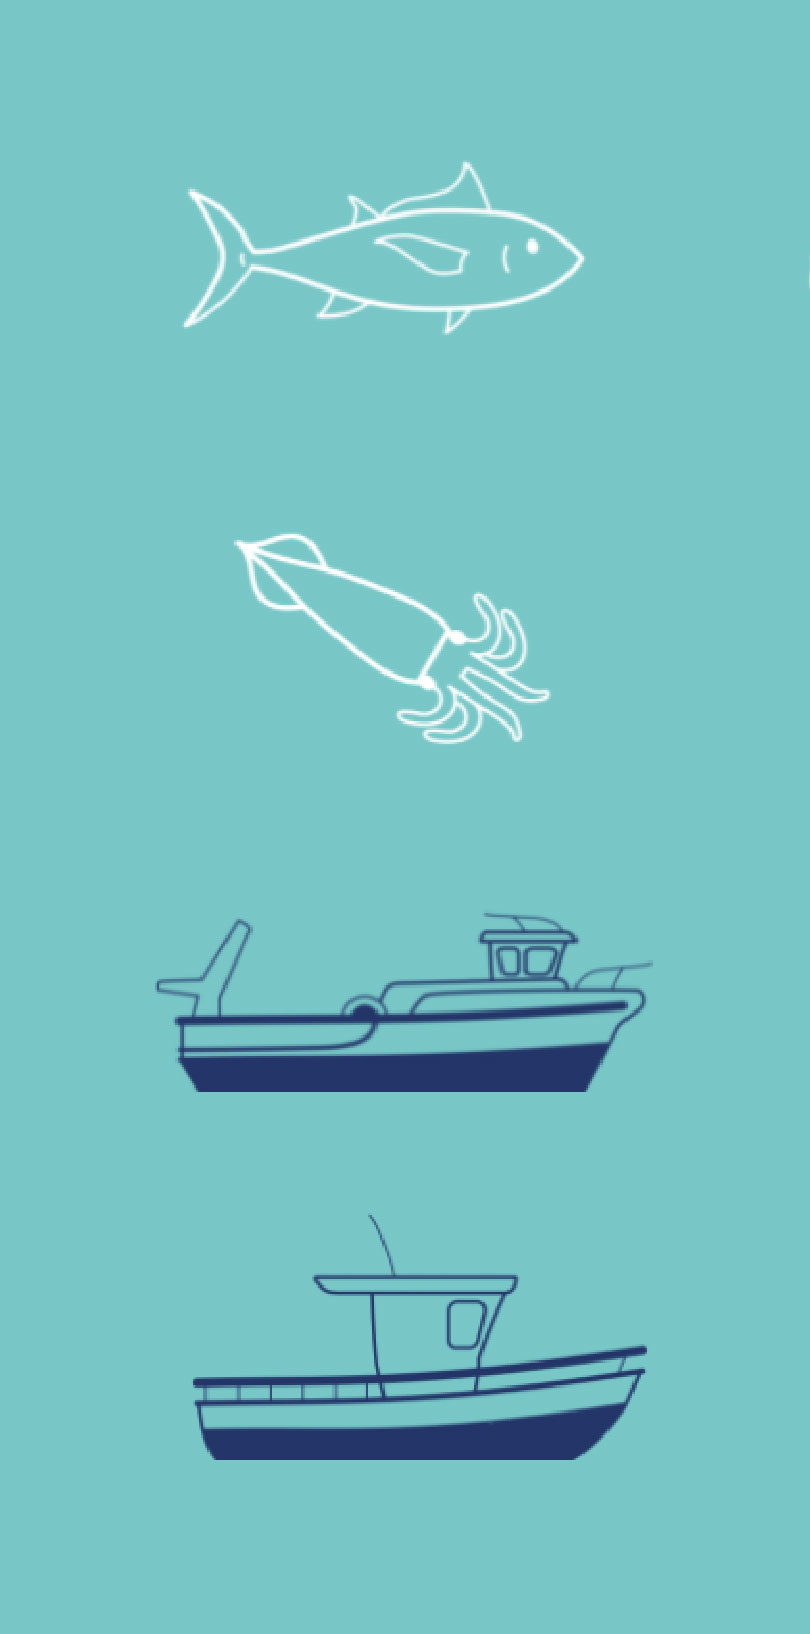 ilustraciones de peces y barcos